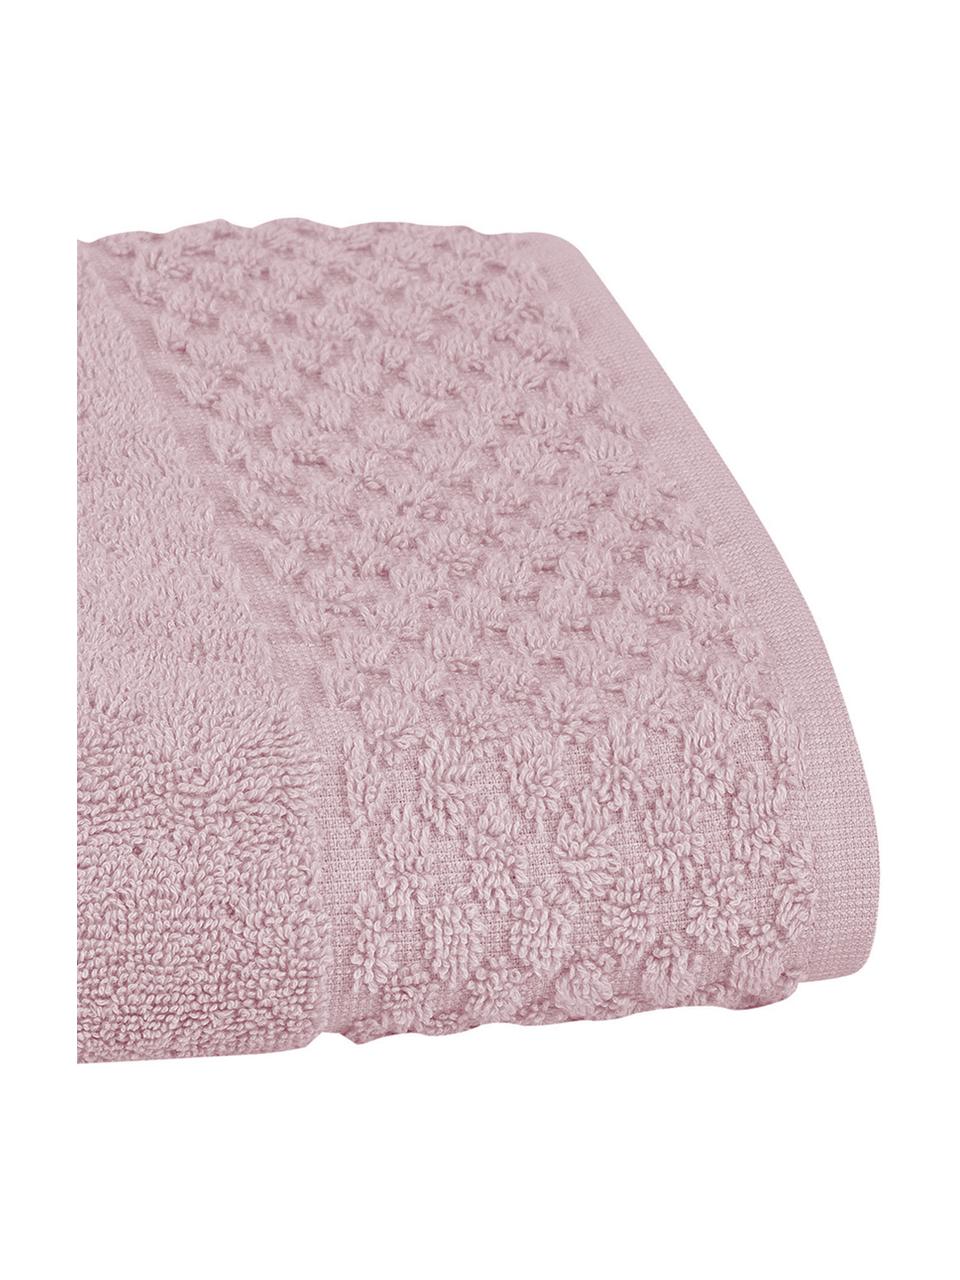 Ręcznik Katharina, różne rozmiary, Brudny różowy, Ręcznik do rąk, S 50 x D 100 cm, 2 szt.